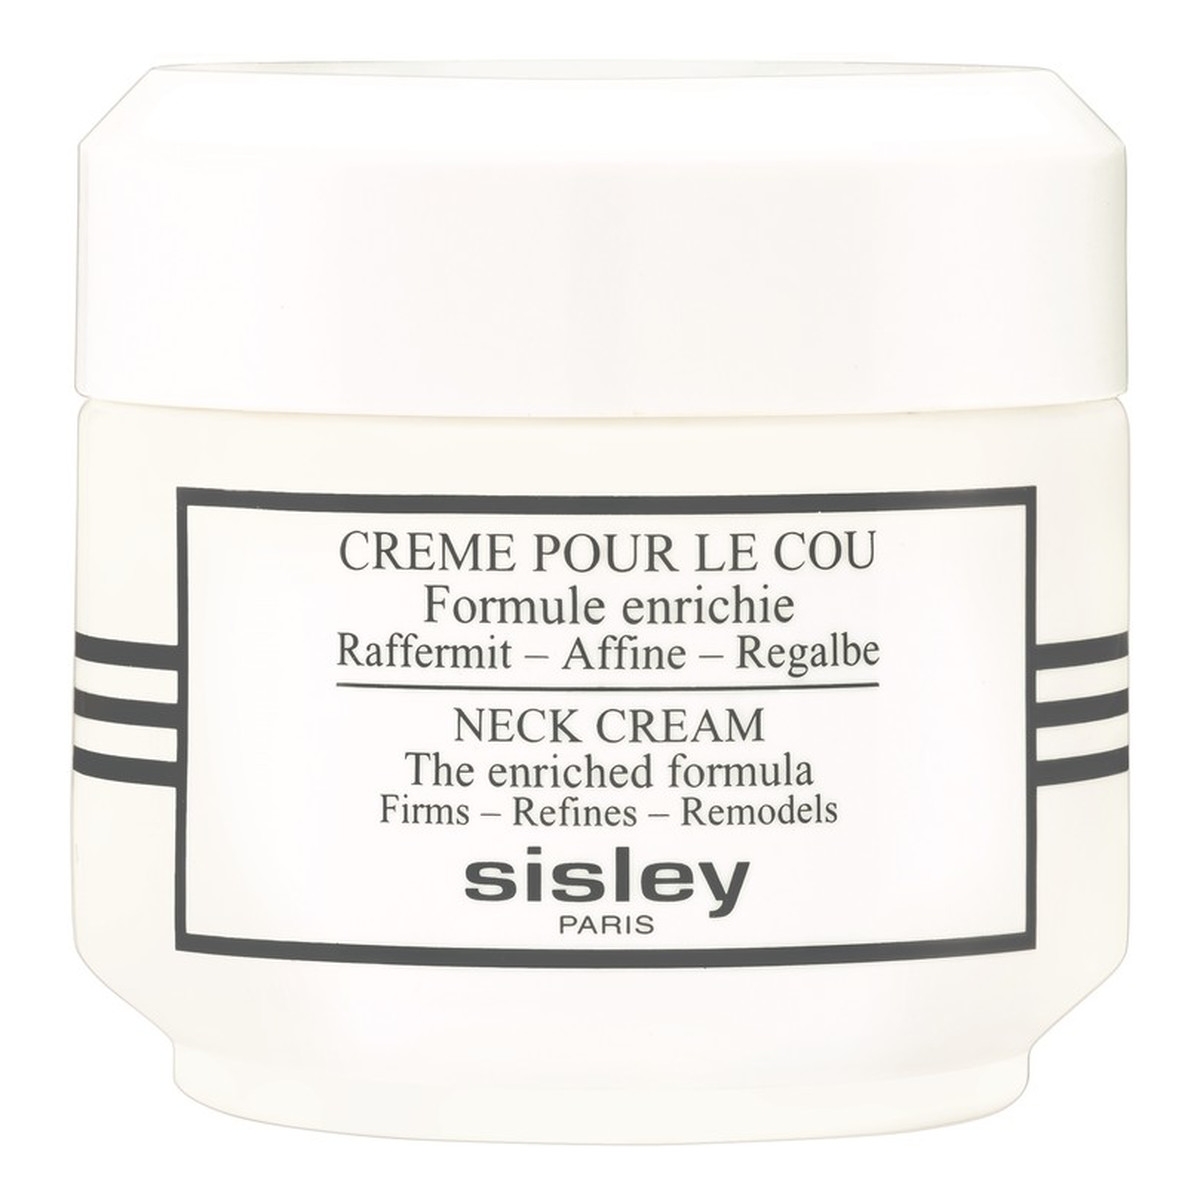 Sisley Neck Cream The Enriched Formula Krem ujędrniający do skóry szyi 50ml